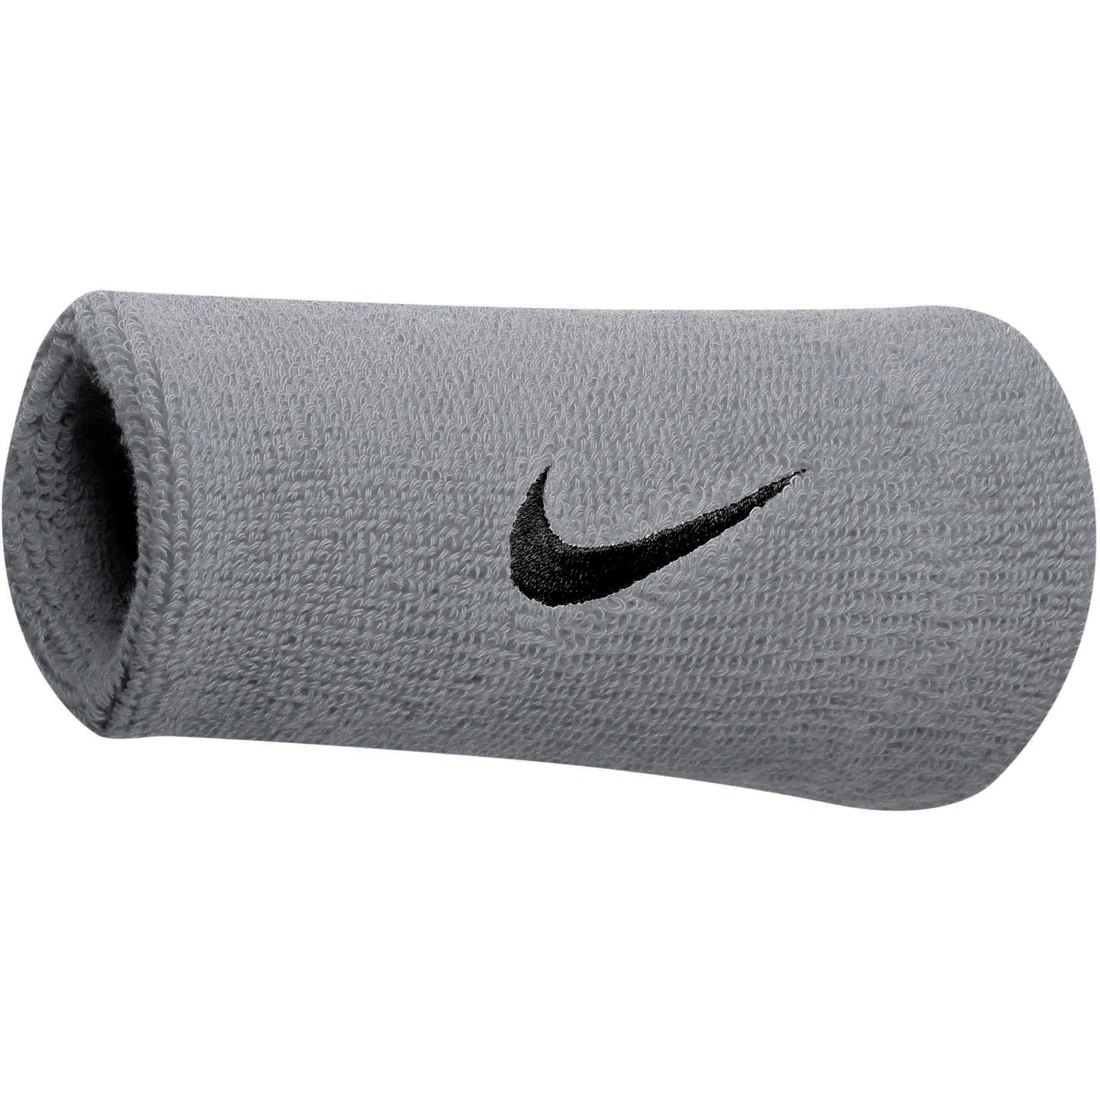 Productfoto van Nike Swoosh Doublewide Zweetpolsbanden (Set van 2) - matte silver/black 078